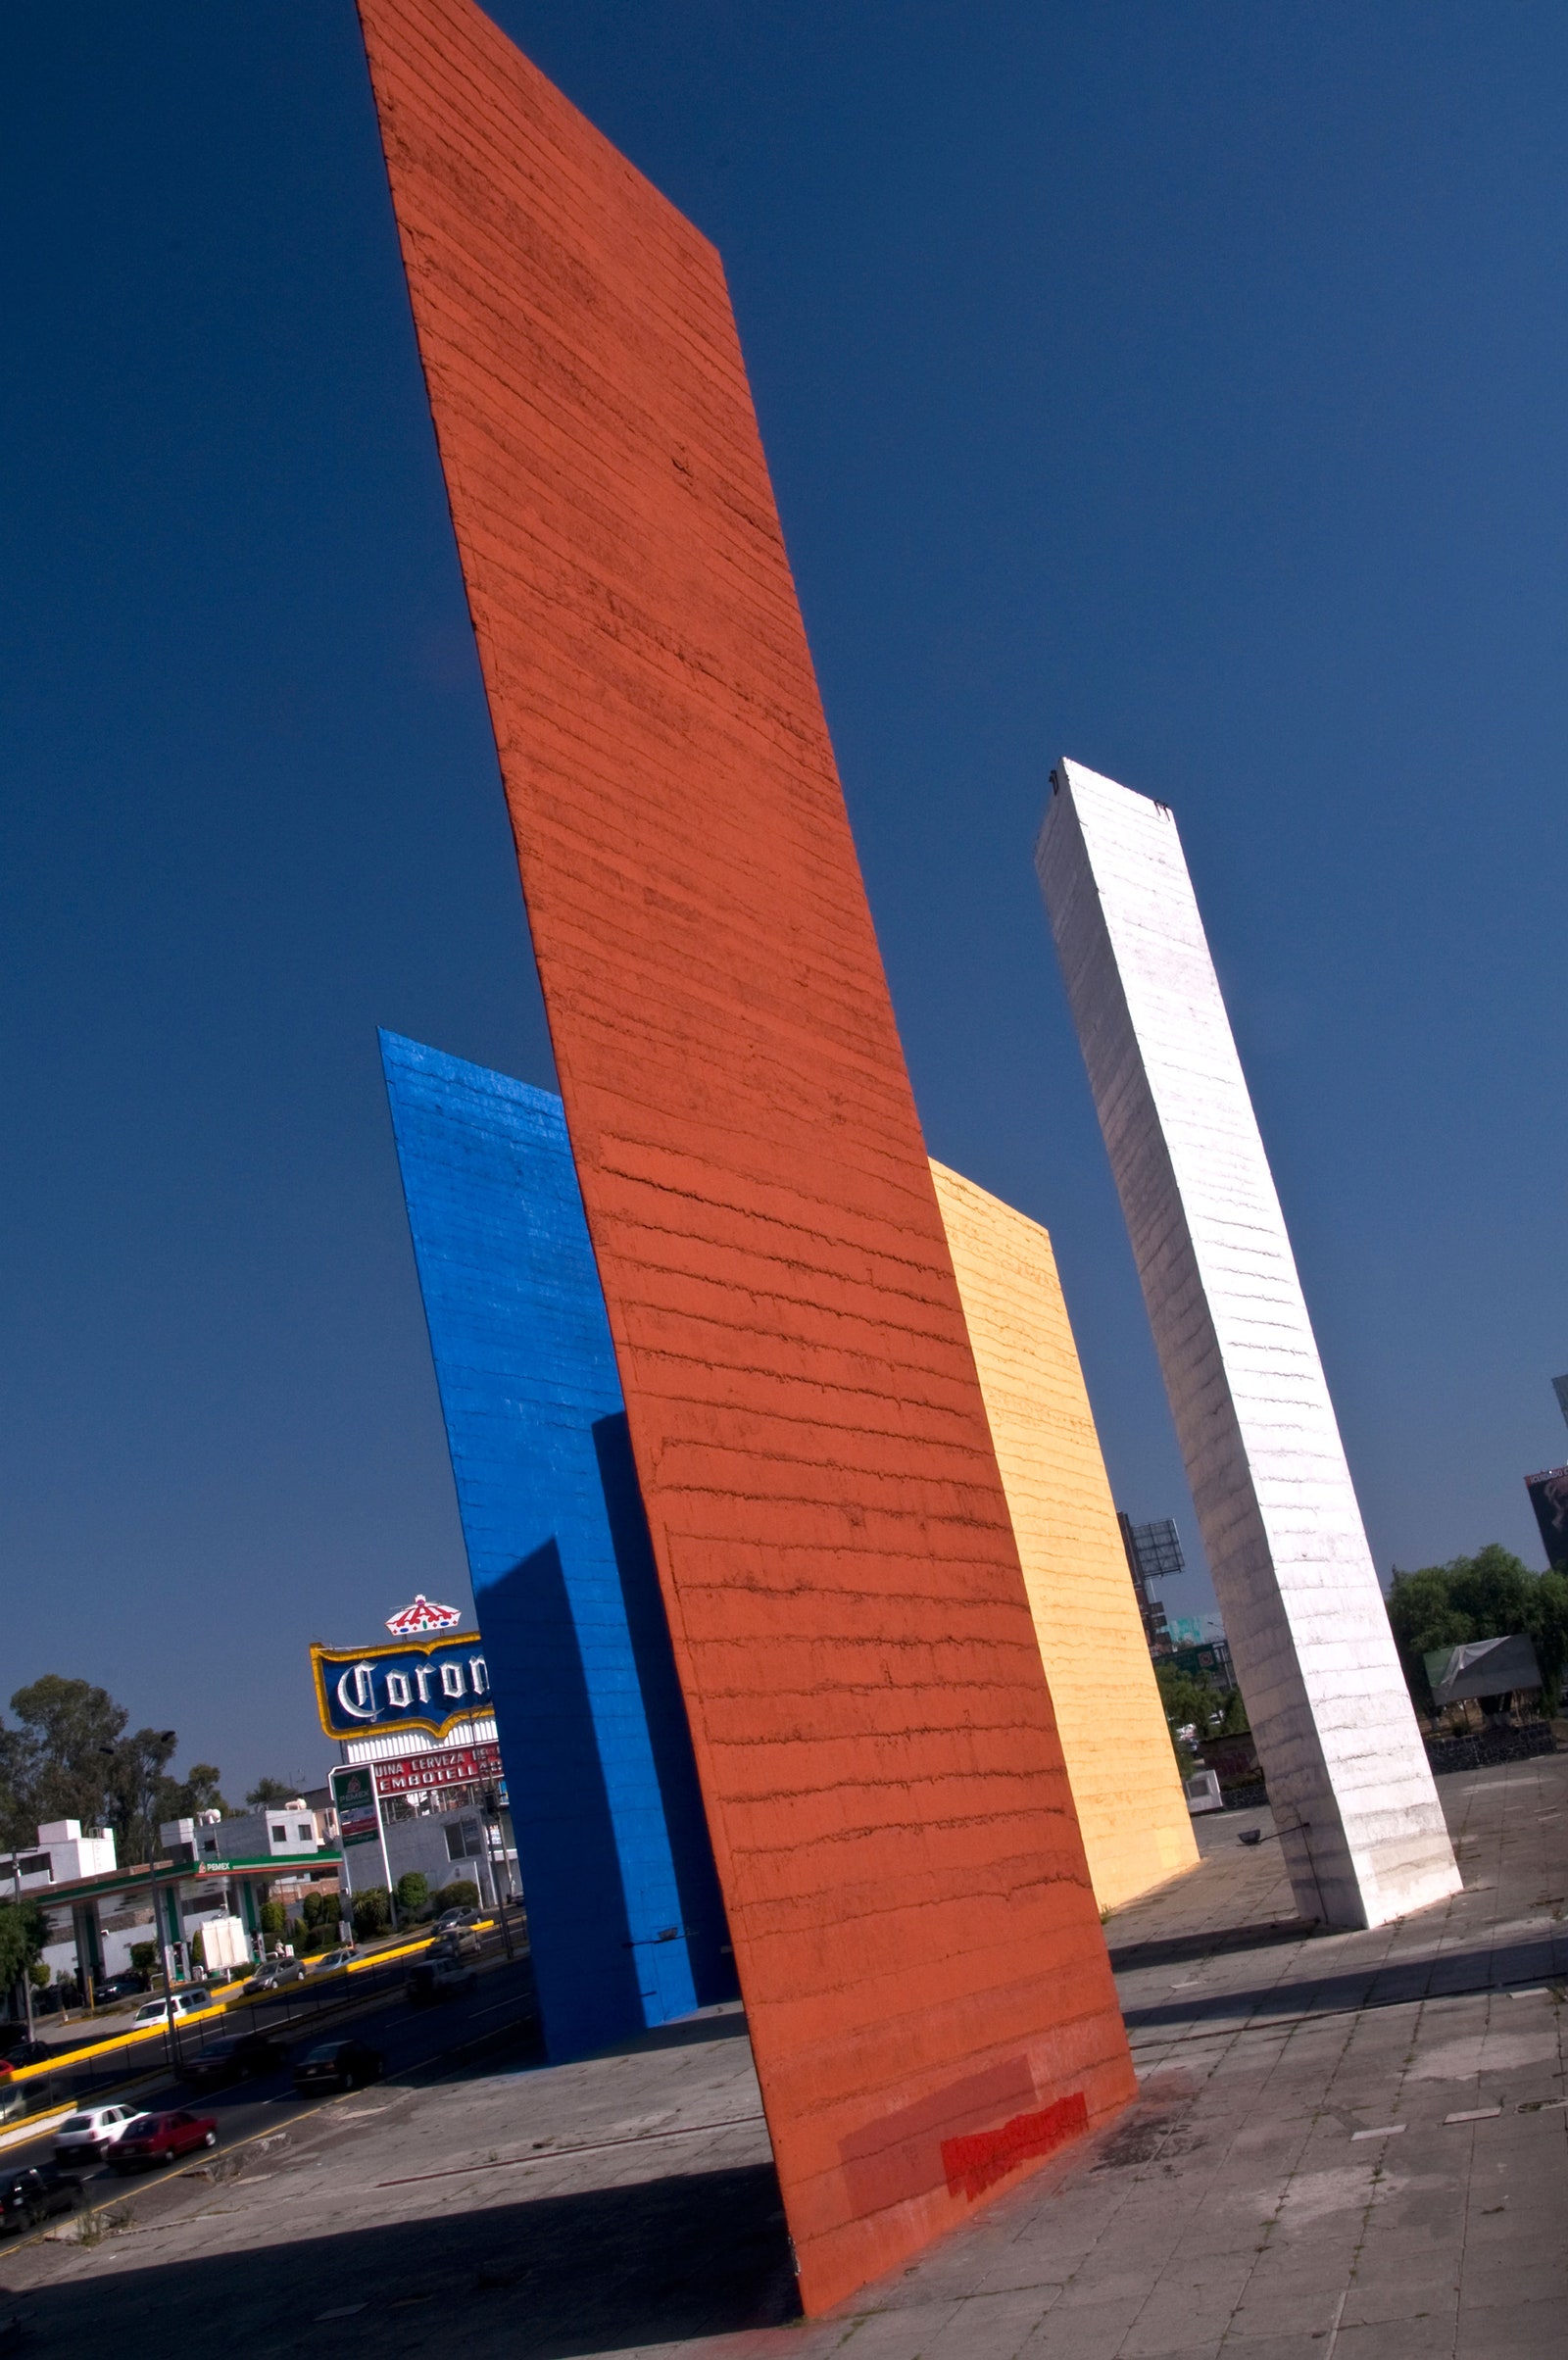 Луис Барраган 7 фактов о мексиканском архитектореминималисте